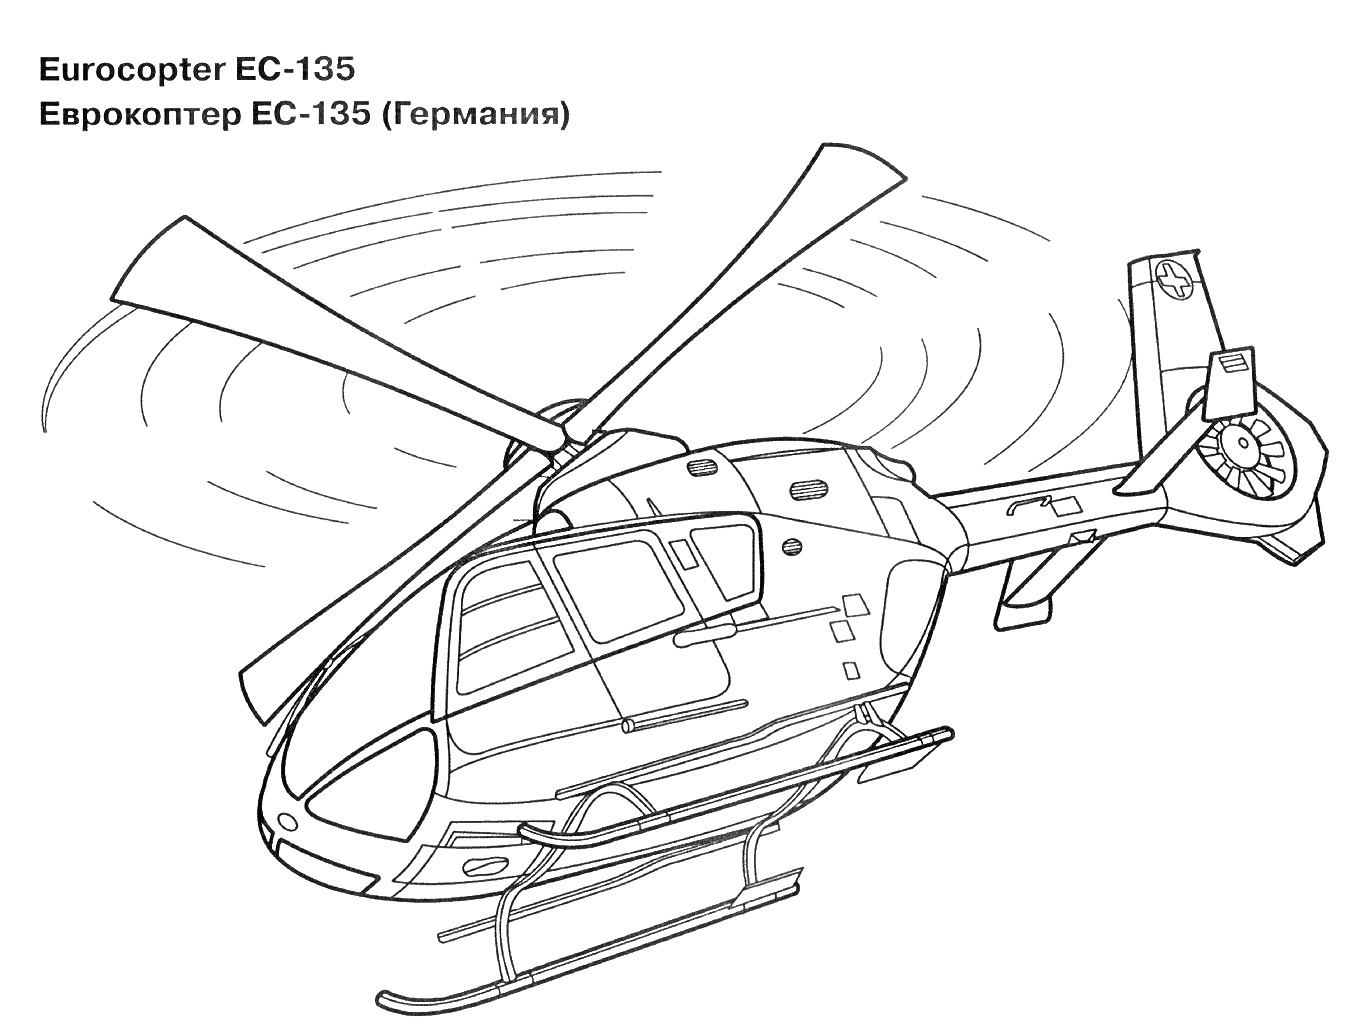 Раскраска Еврокоптер EC-135, Германия, рисунок вертолета с вращающимися лопастями